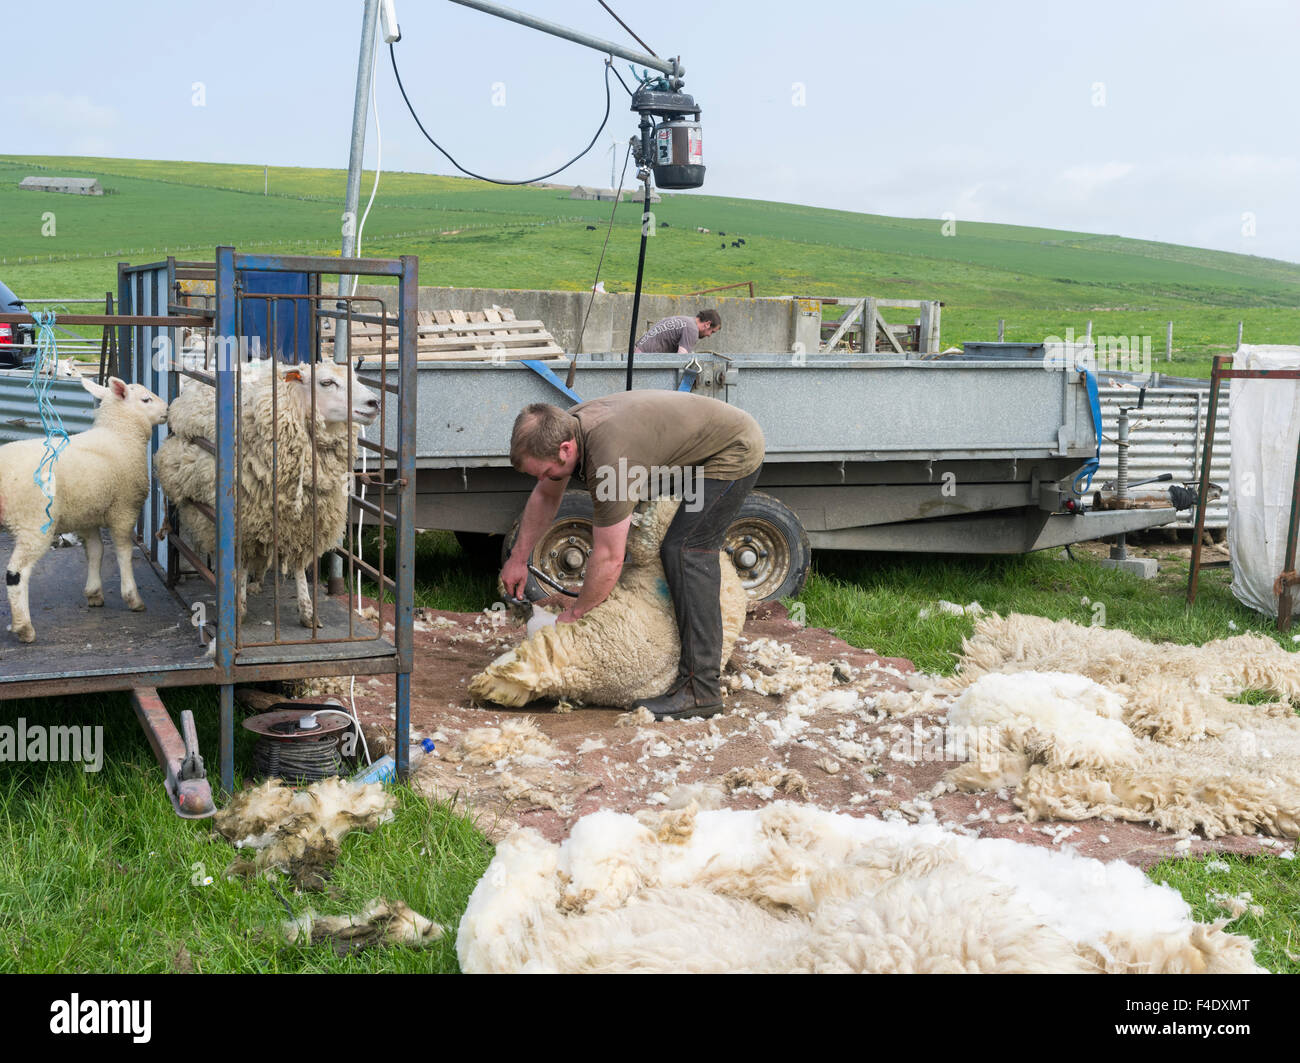 Tonte des moutons Shetland dans un enclos. C'est un traditionnel, hardy race de Les îles du nord de l'Écosse. Tailles disponibles (grand format) Banque D'Images